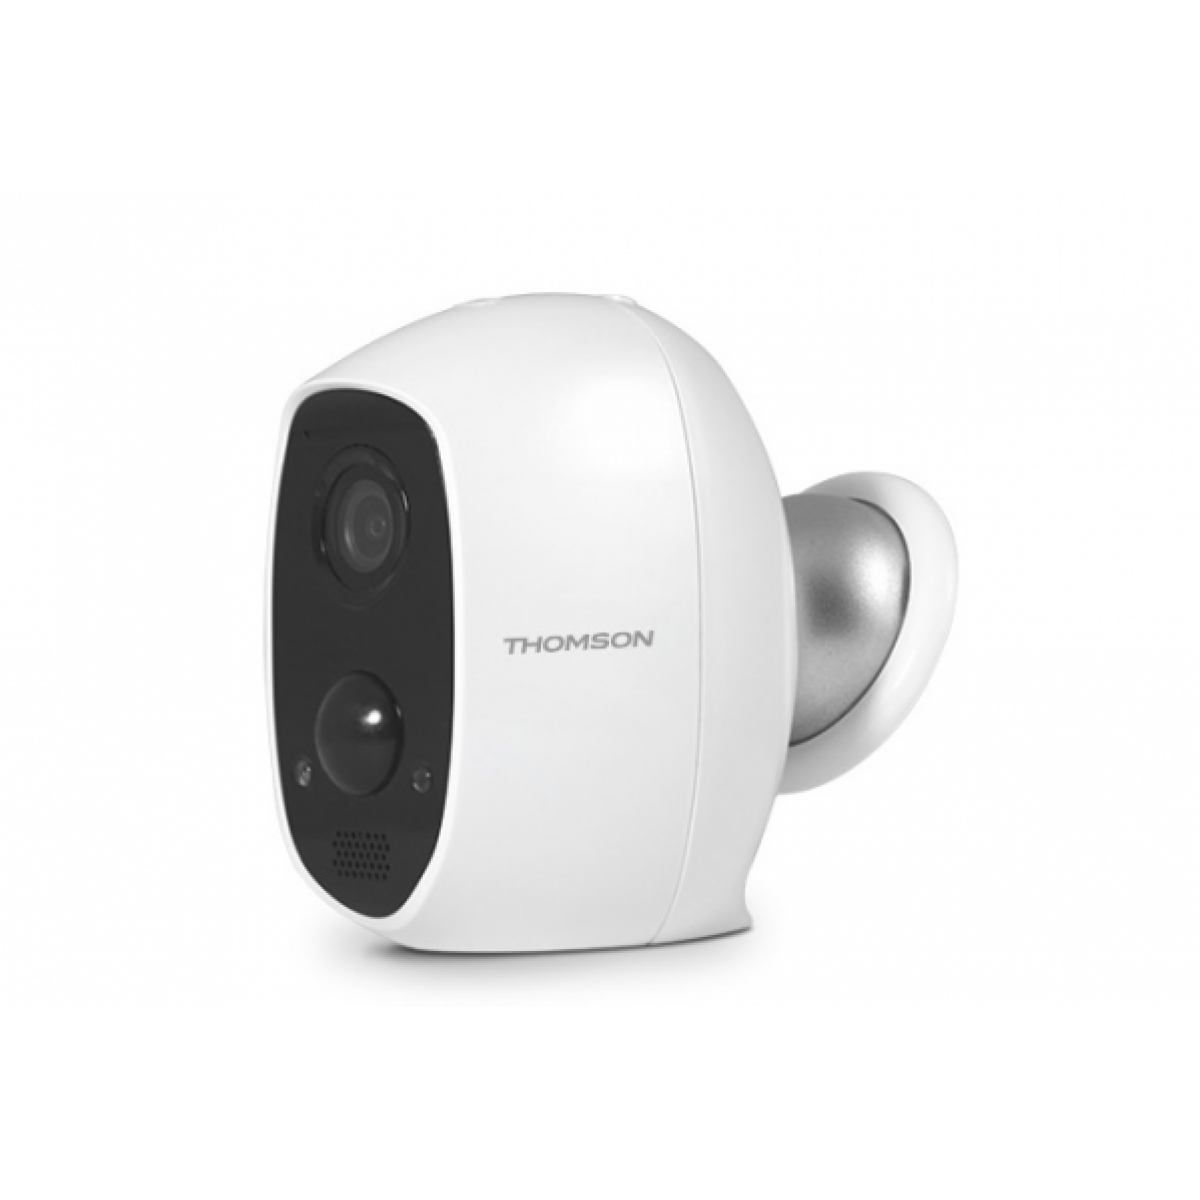 Thomson - Thomson - Caméra autonome Full HD 1080p Li-ion 5500 mAh Wifi intérieure ou extérieure - Lens 150 - Alarme connectée